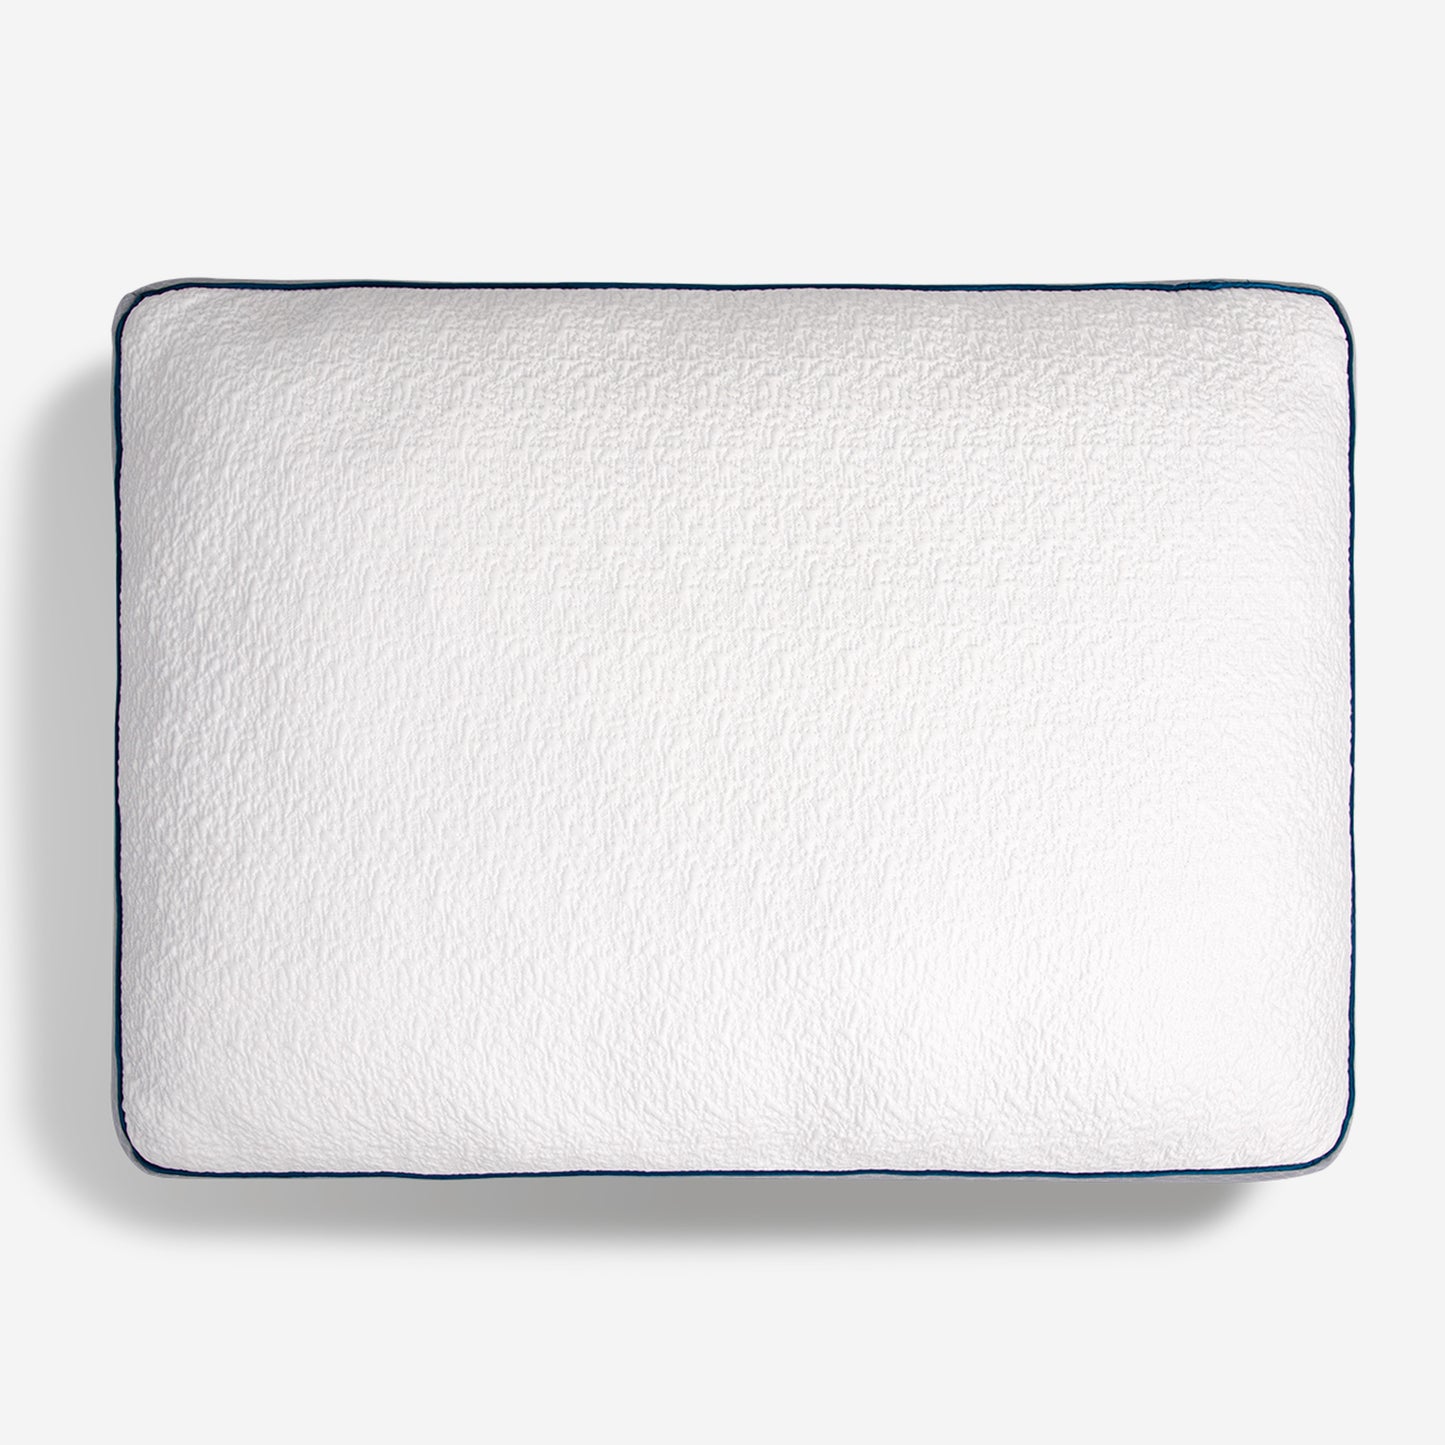 Bedgear Linea 3.0 Side Sleeper Pillow